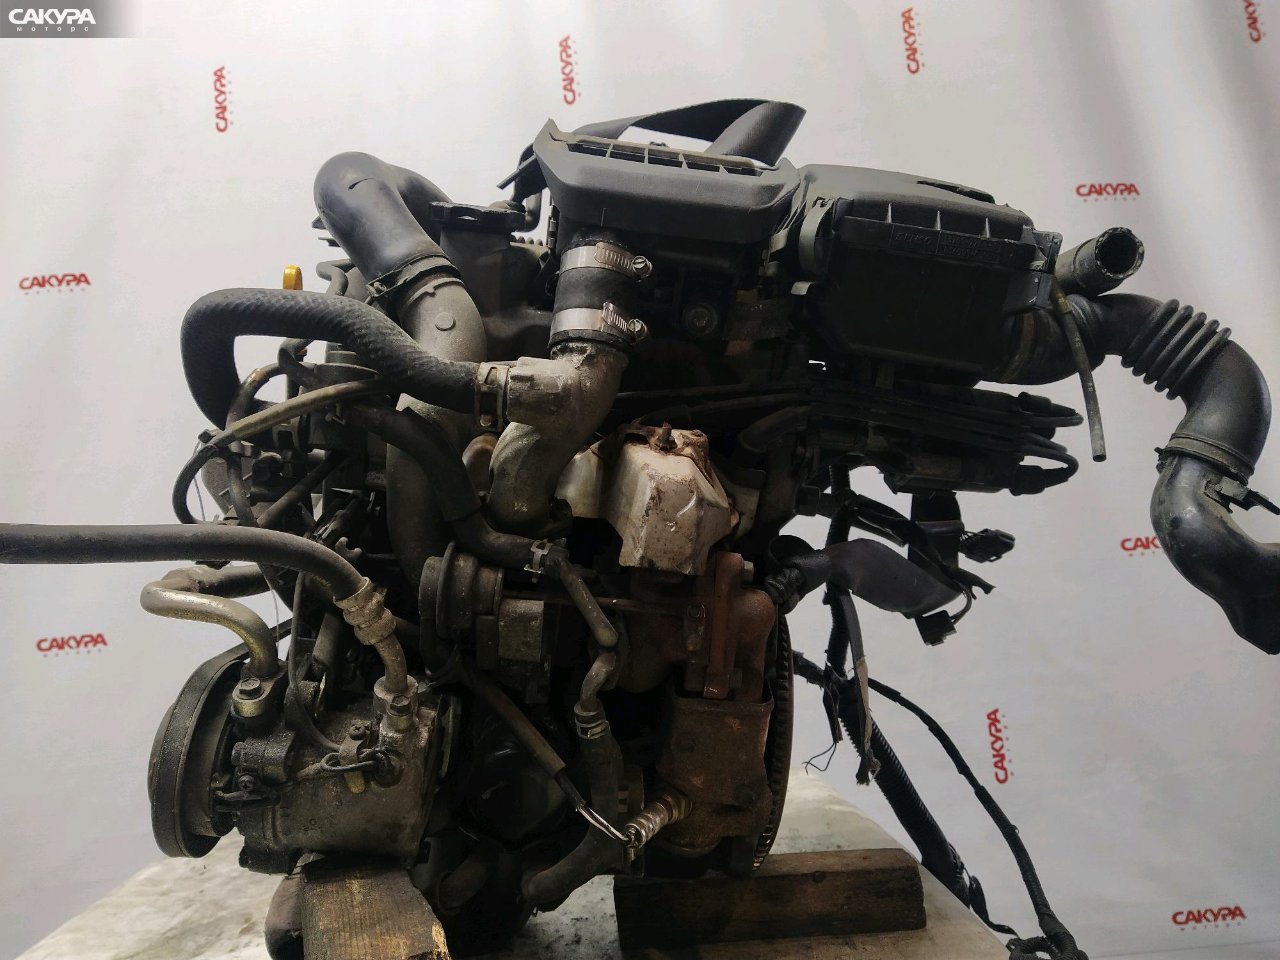 Двигатель Suzuki KEI HN21S K6A-T: купить в Сакура Красноярск.